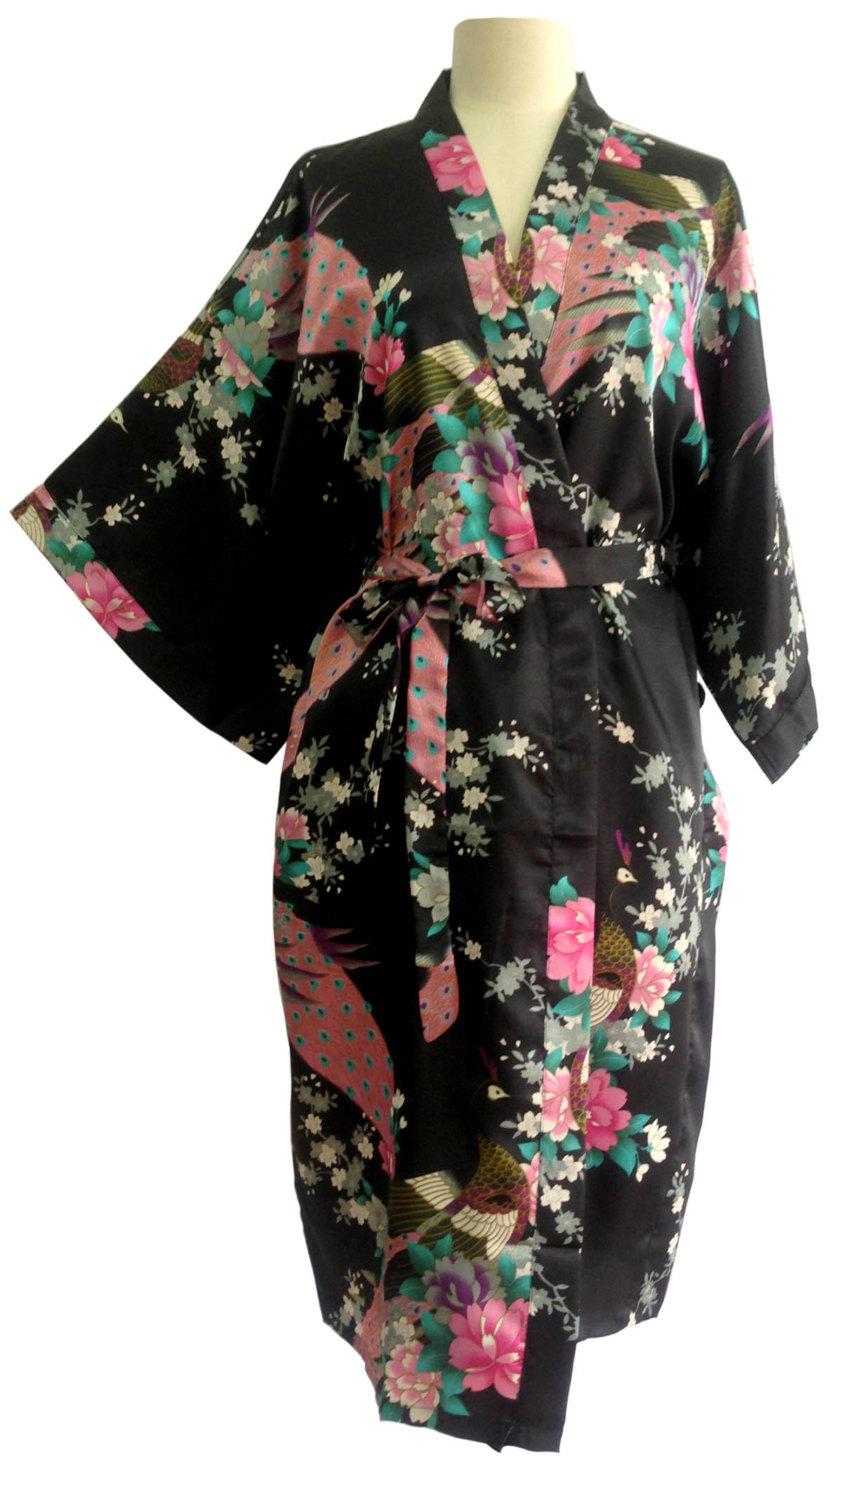 زفاف - On Sale Kimono Robes Bridesmaids Silk Satin Black Colour Paint Peacock Design Pattern Gift Wedding dress for Party Free Size